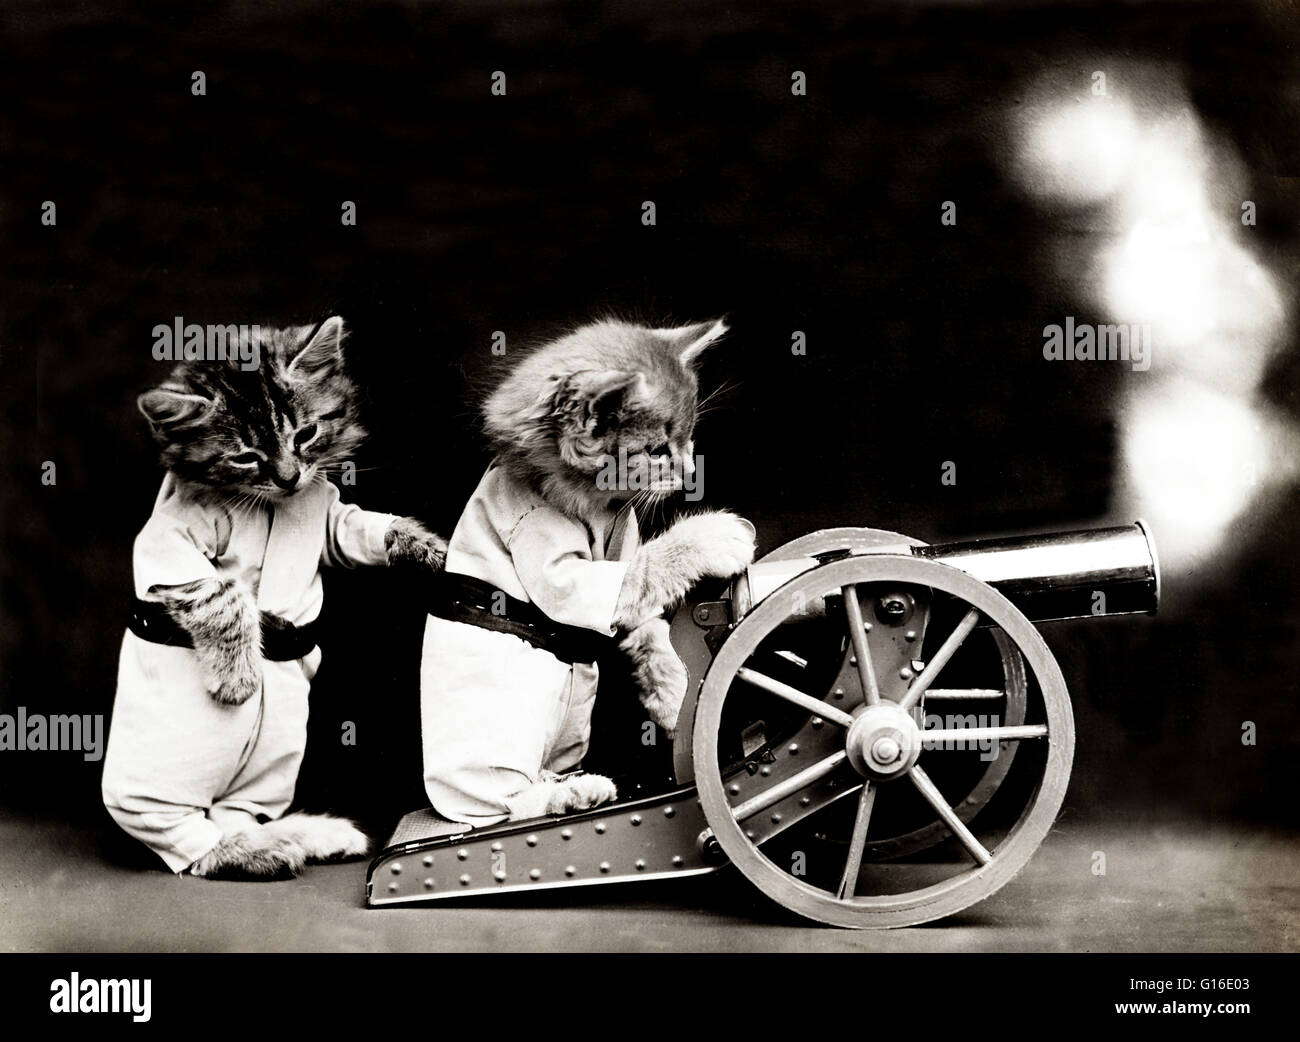 Titel: "Feuer!" zeigt zwei Kätzchen Kleidung Abfeuern einer Kanone. Harry Whittier befreit (1879-1953) war ein US-amerikanischer Fotograf, der lebende Tiere gekleidet und posierte in menschlichen Situationen mit Requisiten fotografiert. Seine Tierfotos wurden auf Post ca vorgestellt. Stockfoto